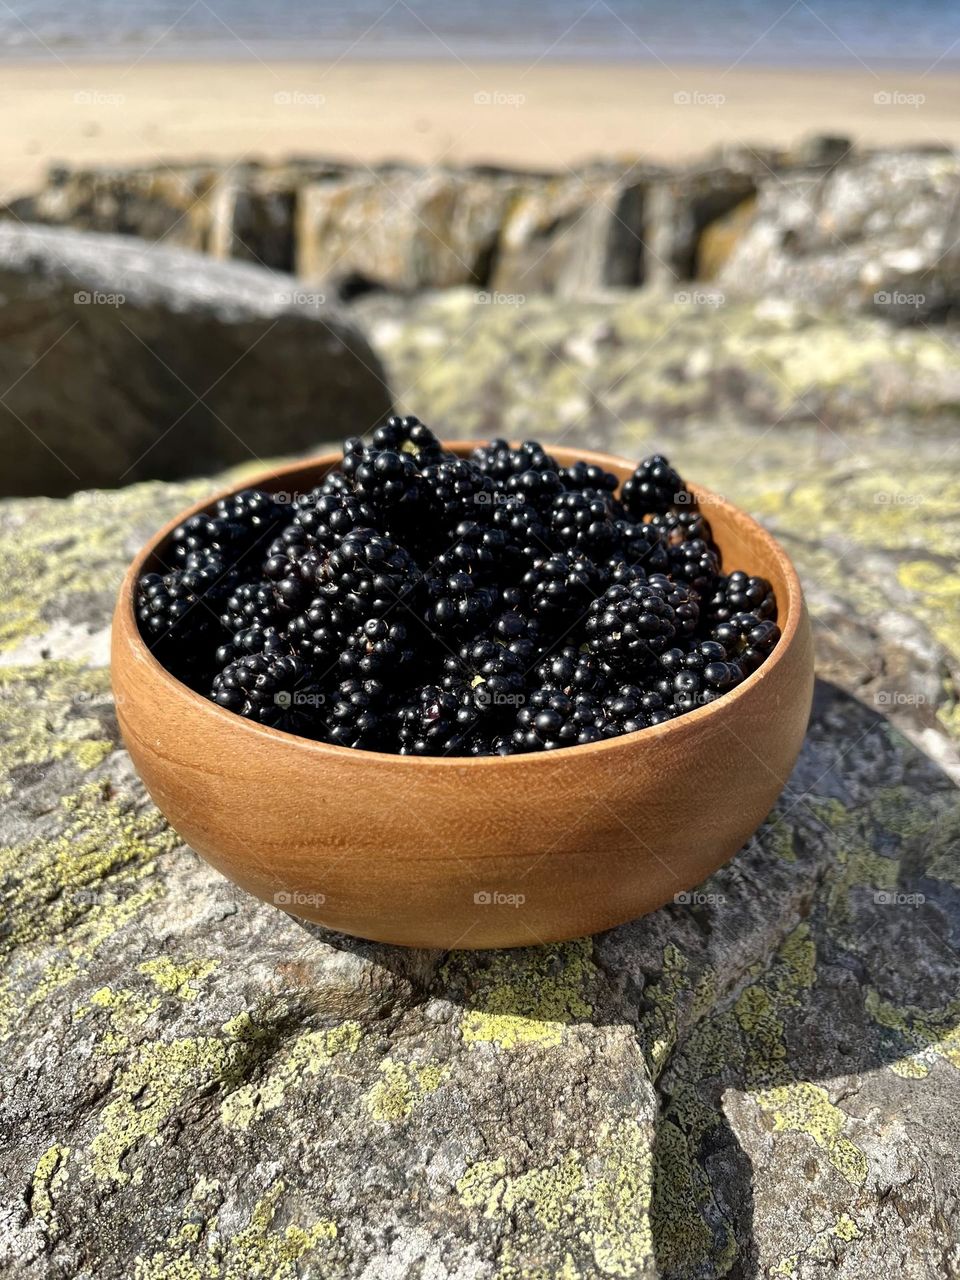 Bowl of blackberries 